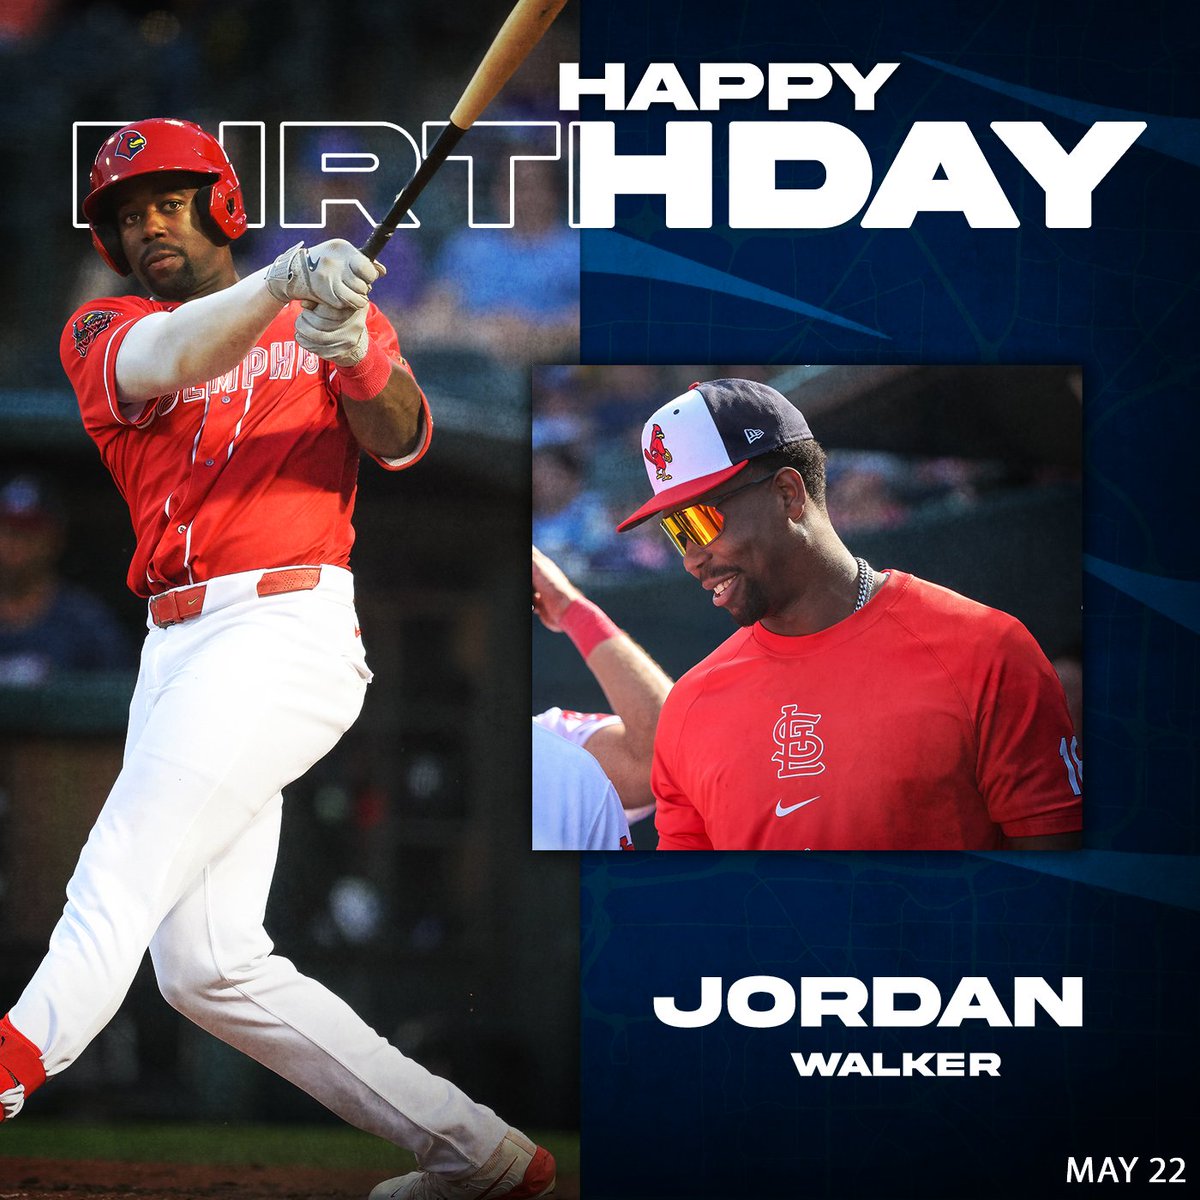 Today let's wish a BIG happy birthday to everyones favorite, Jordan Walker! 🎉 🎂 🎁